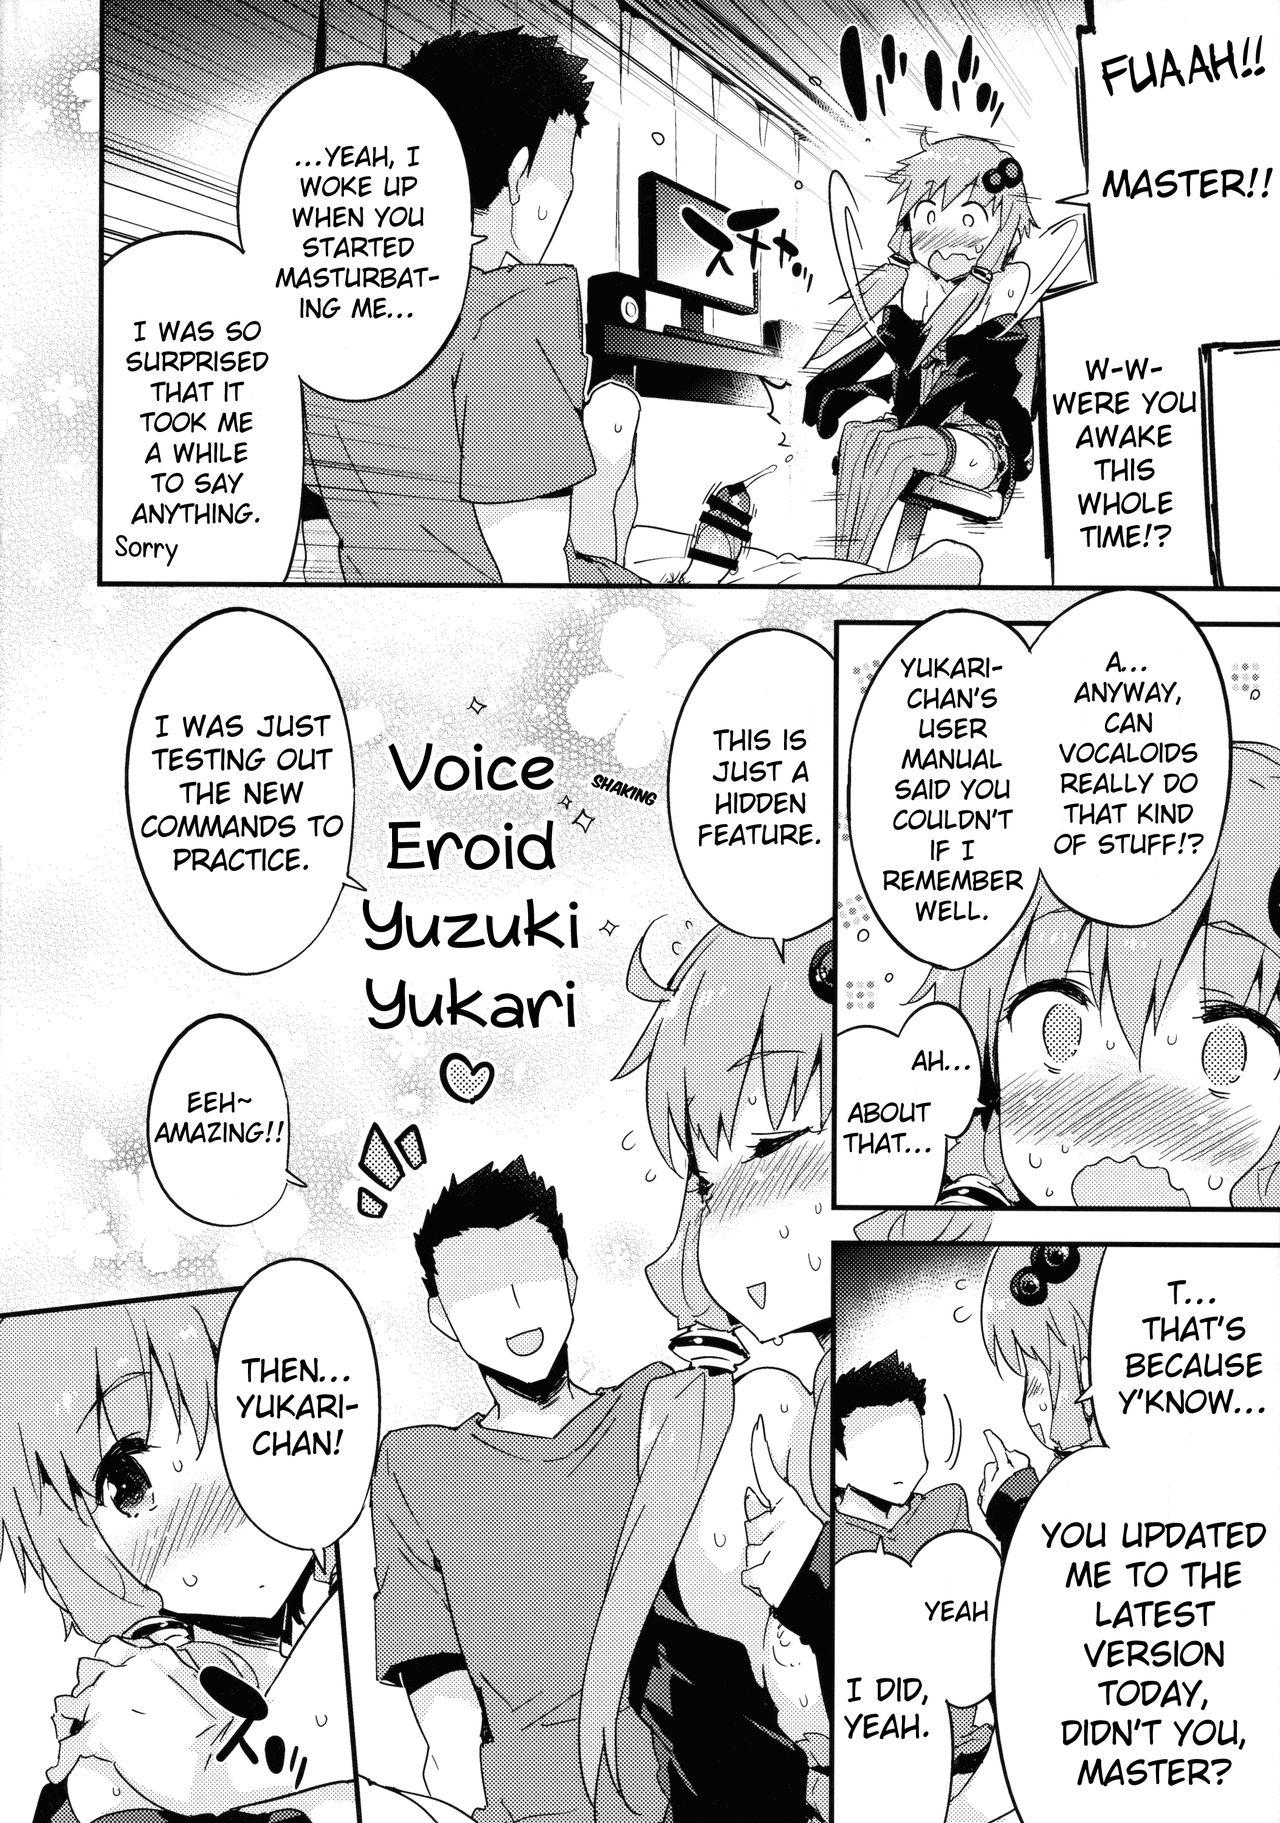 Voice Eroid + Sex Yuzuki Yukari 10